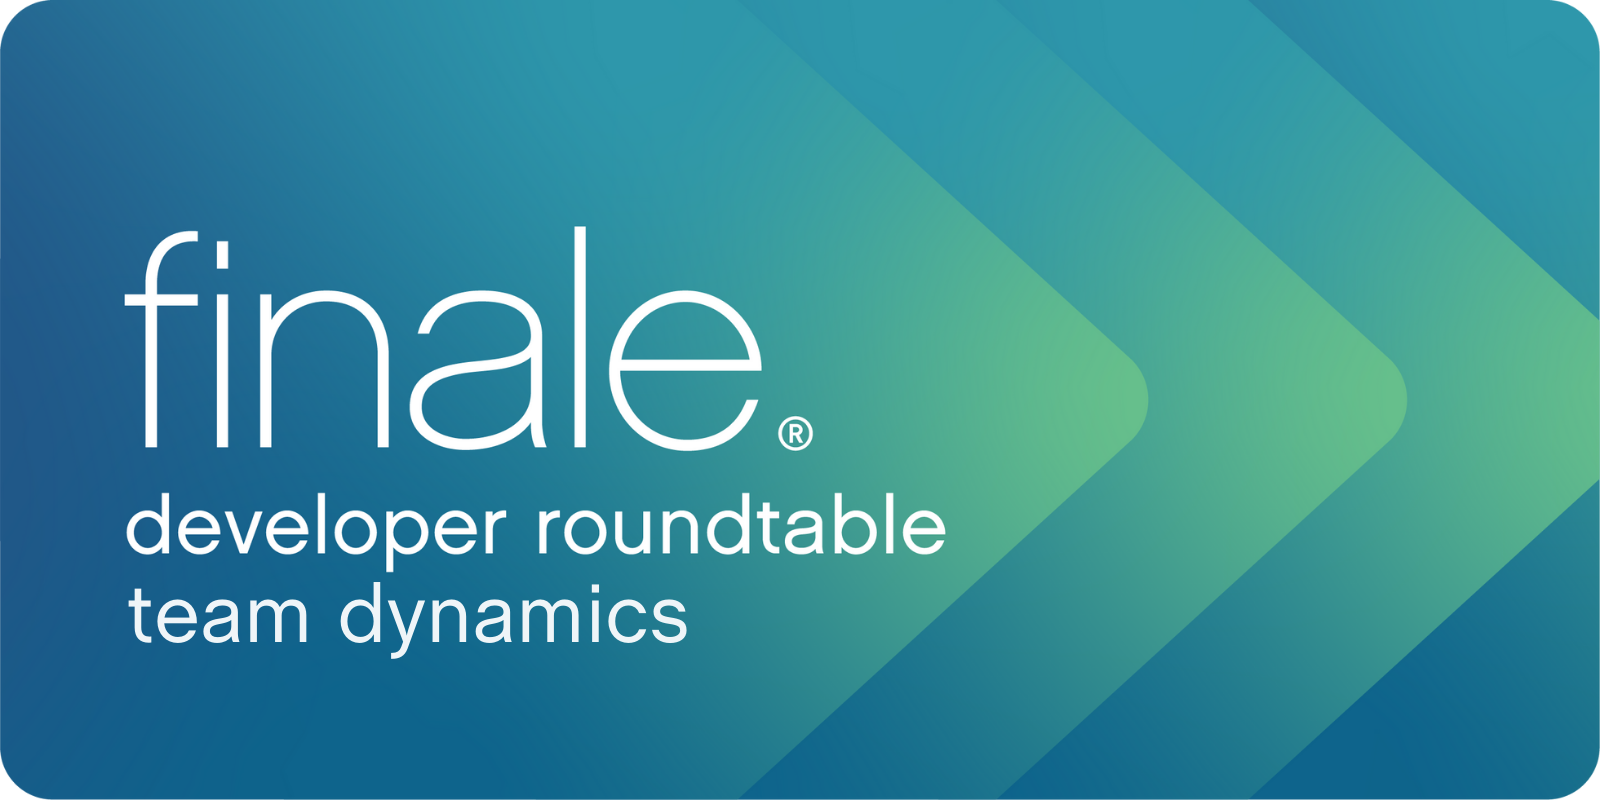 developer roundtable team dynamics